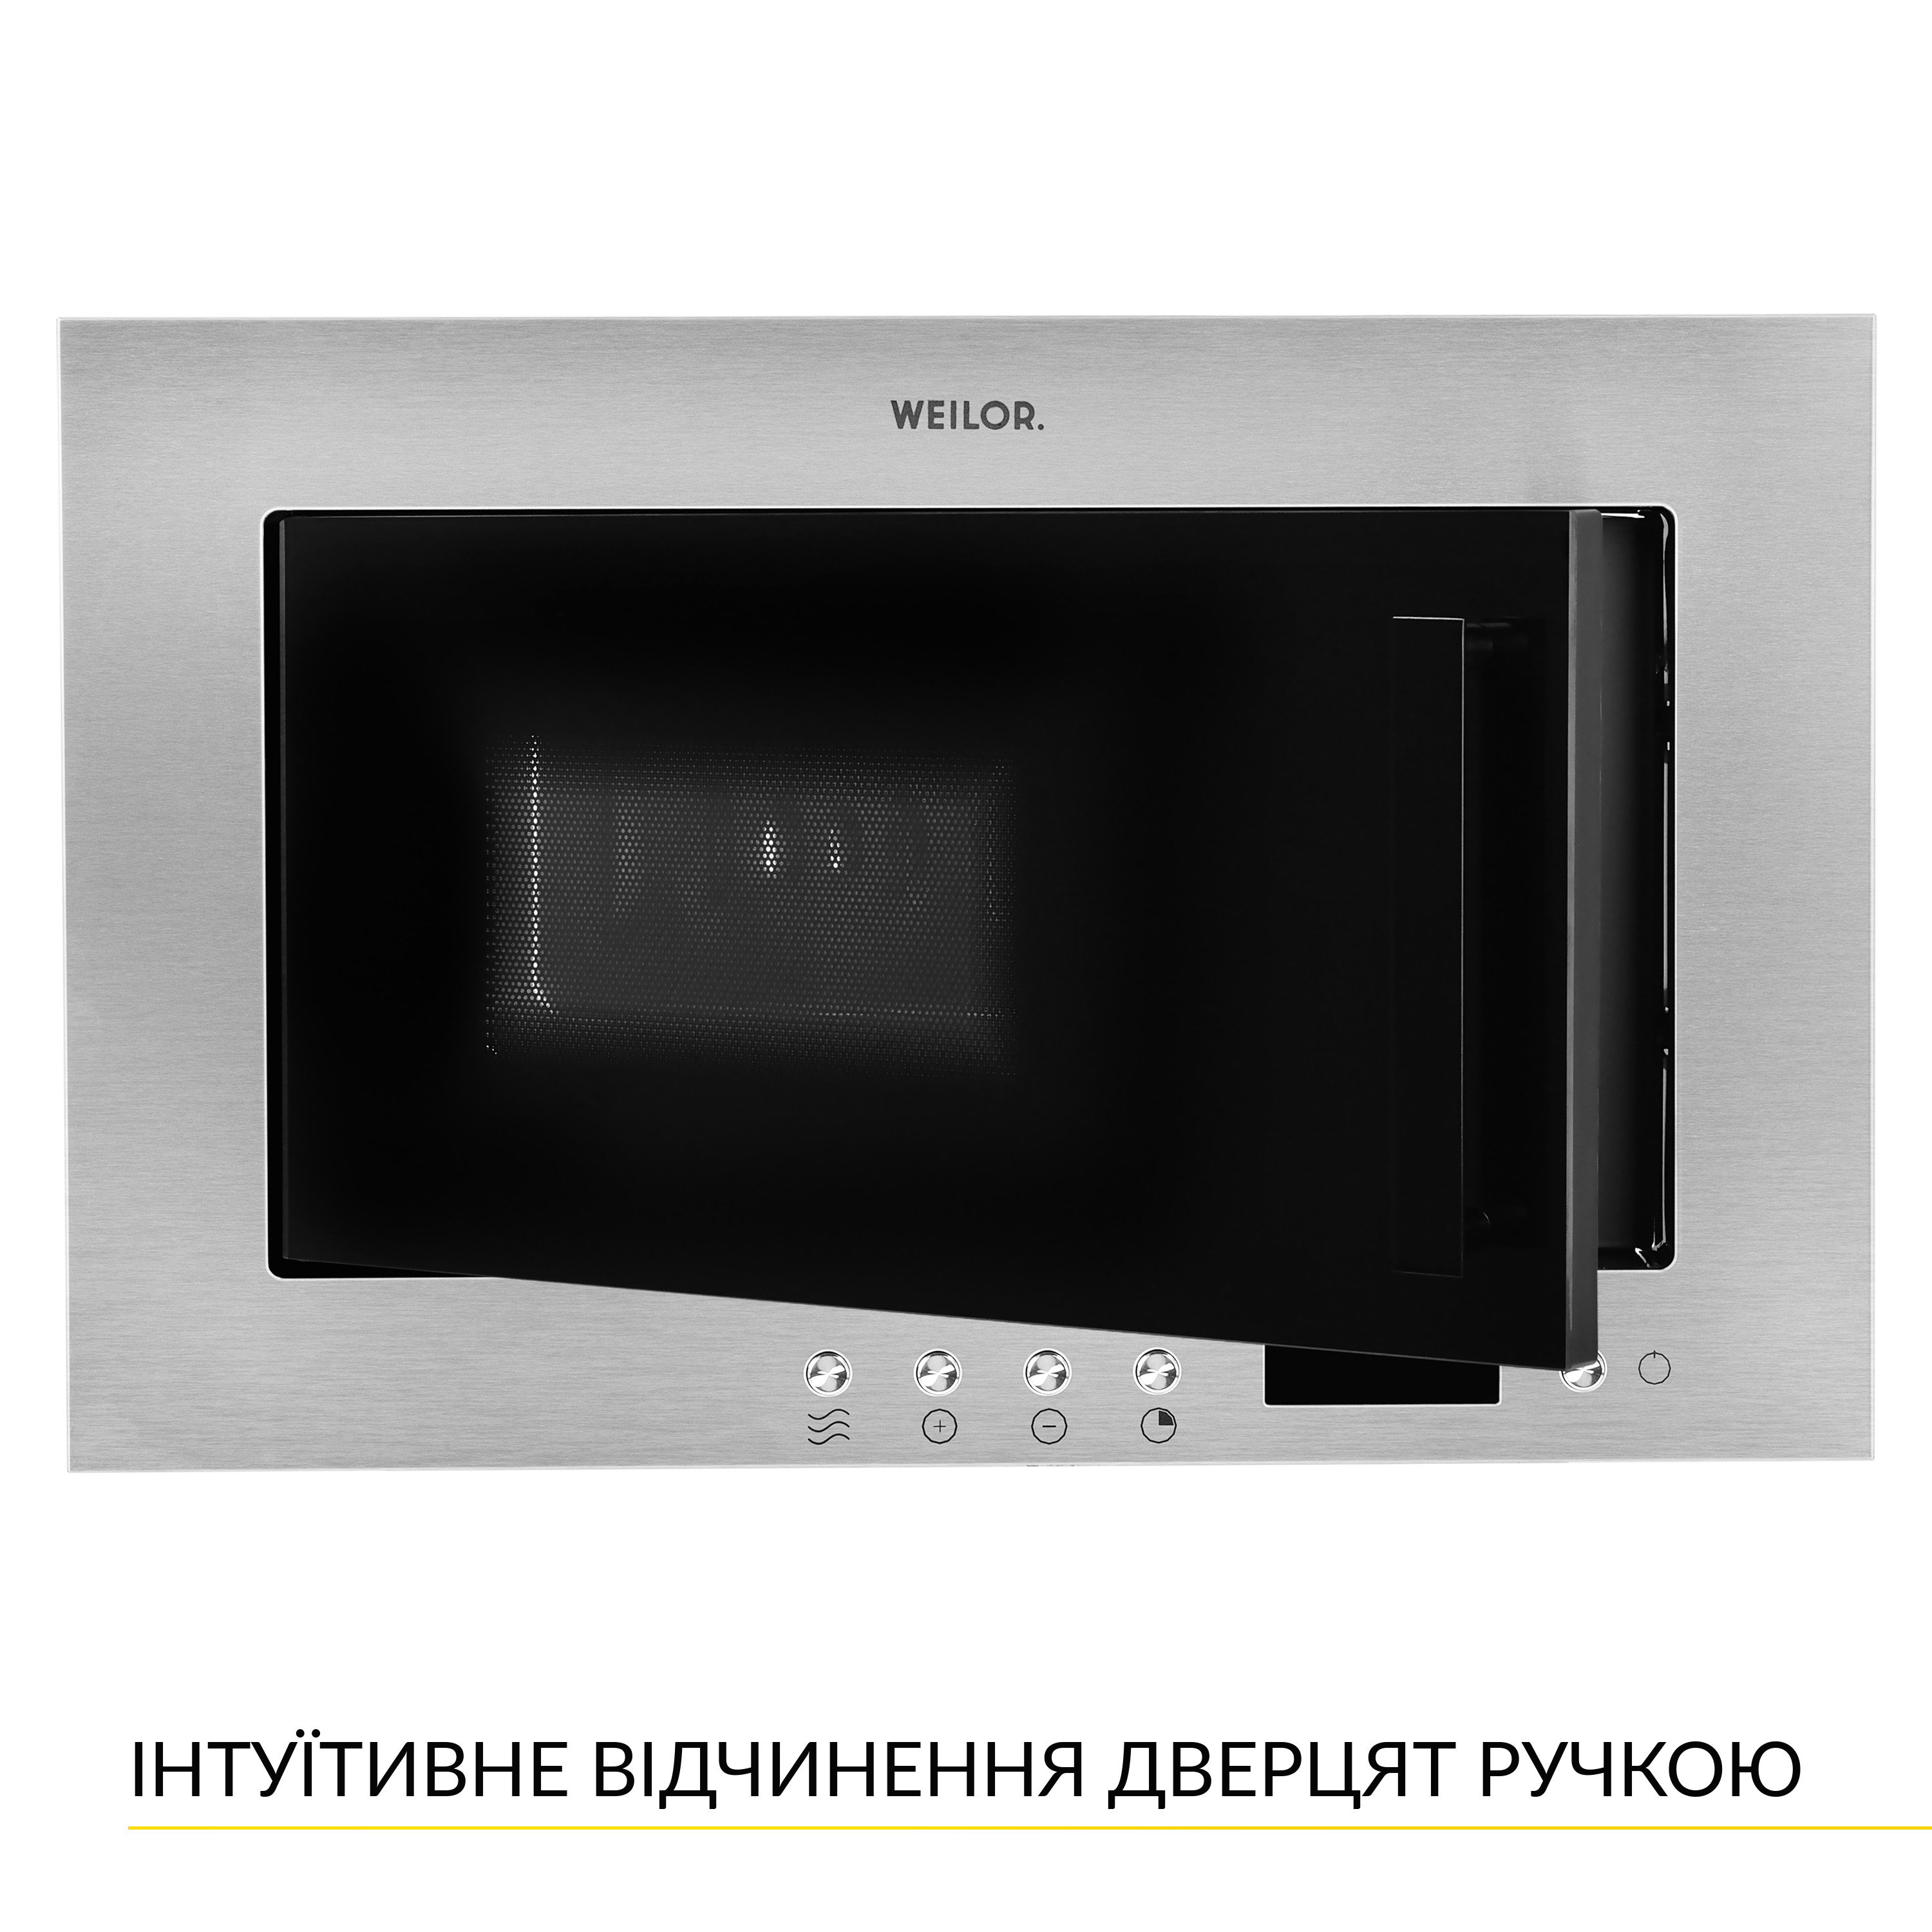 Микроволновая печь Weilor WBM 2041 GSS обзор - фото 8